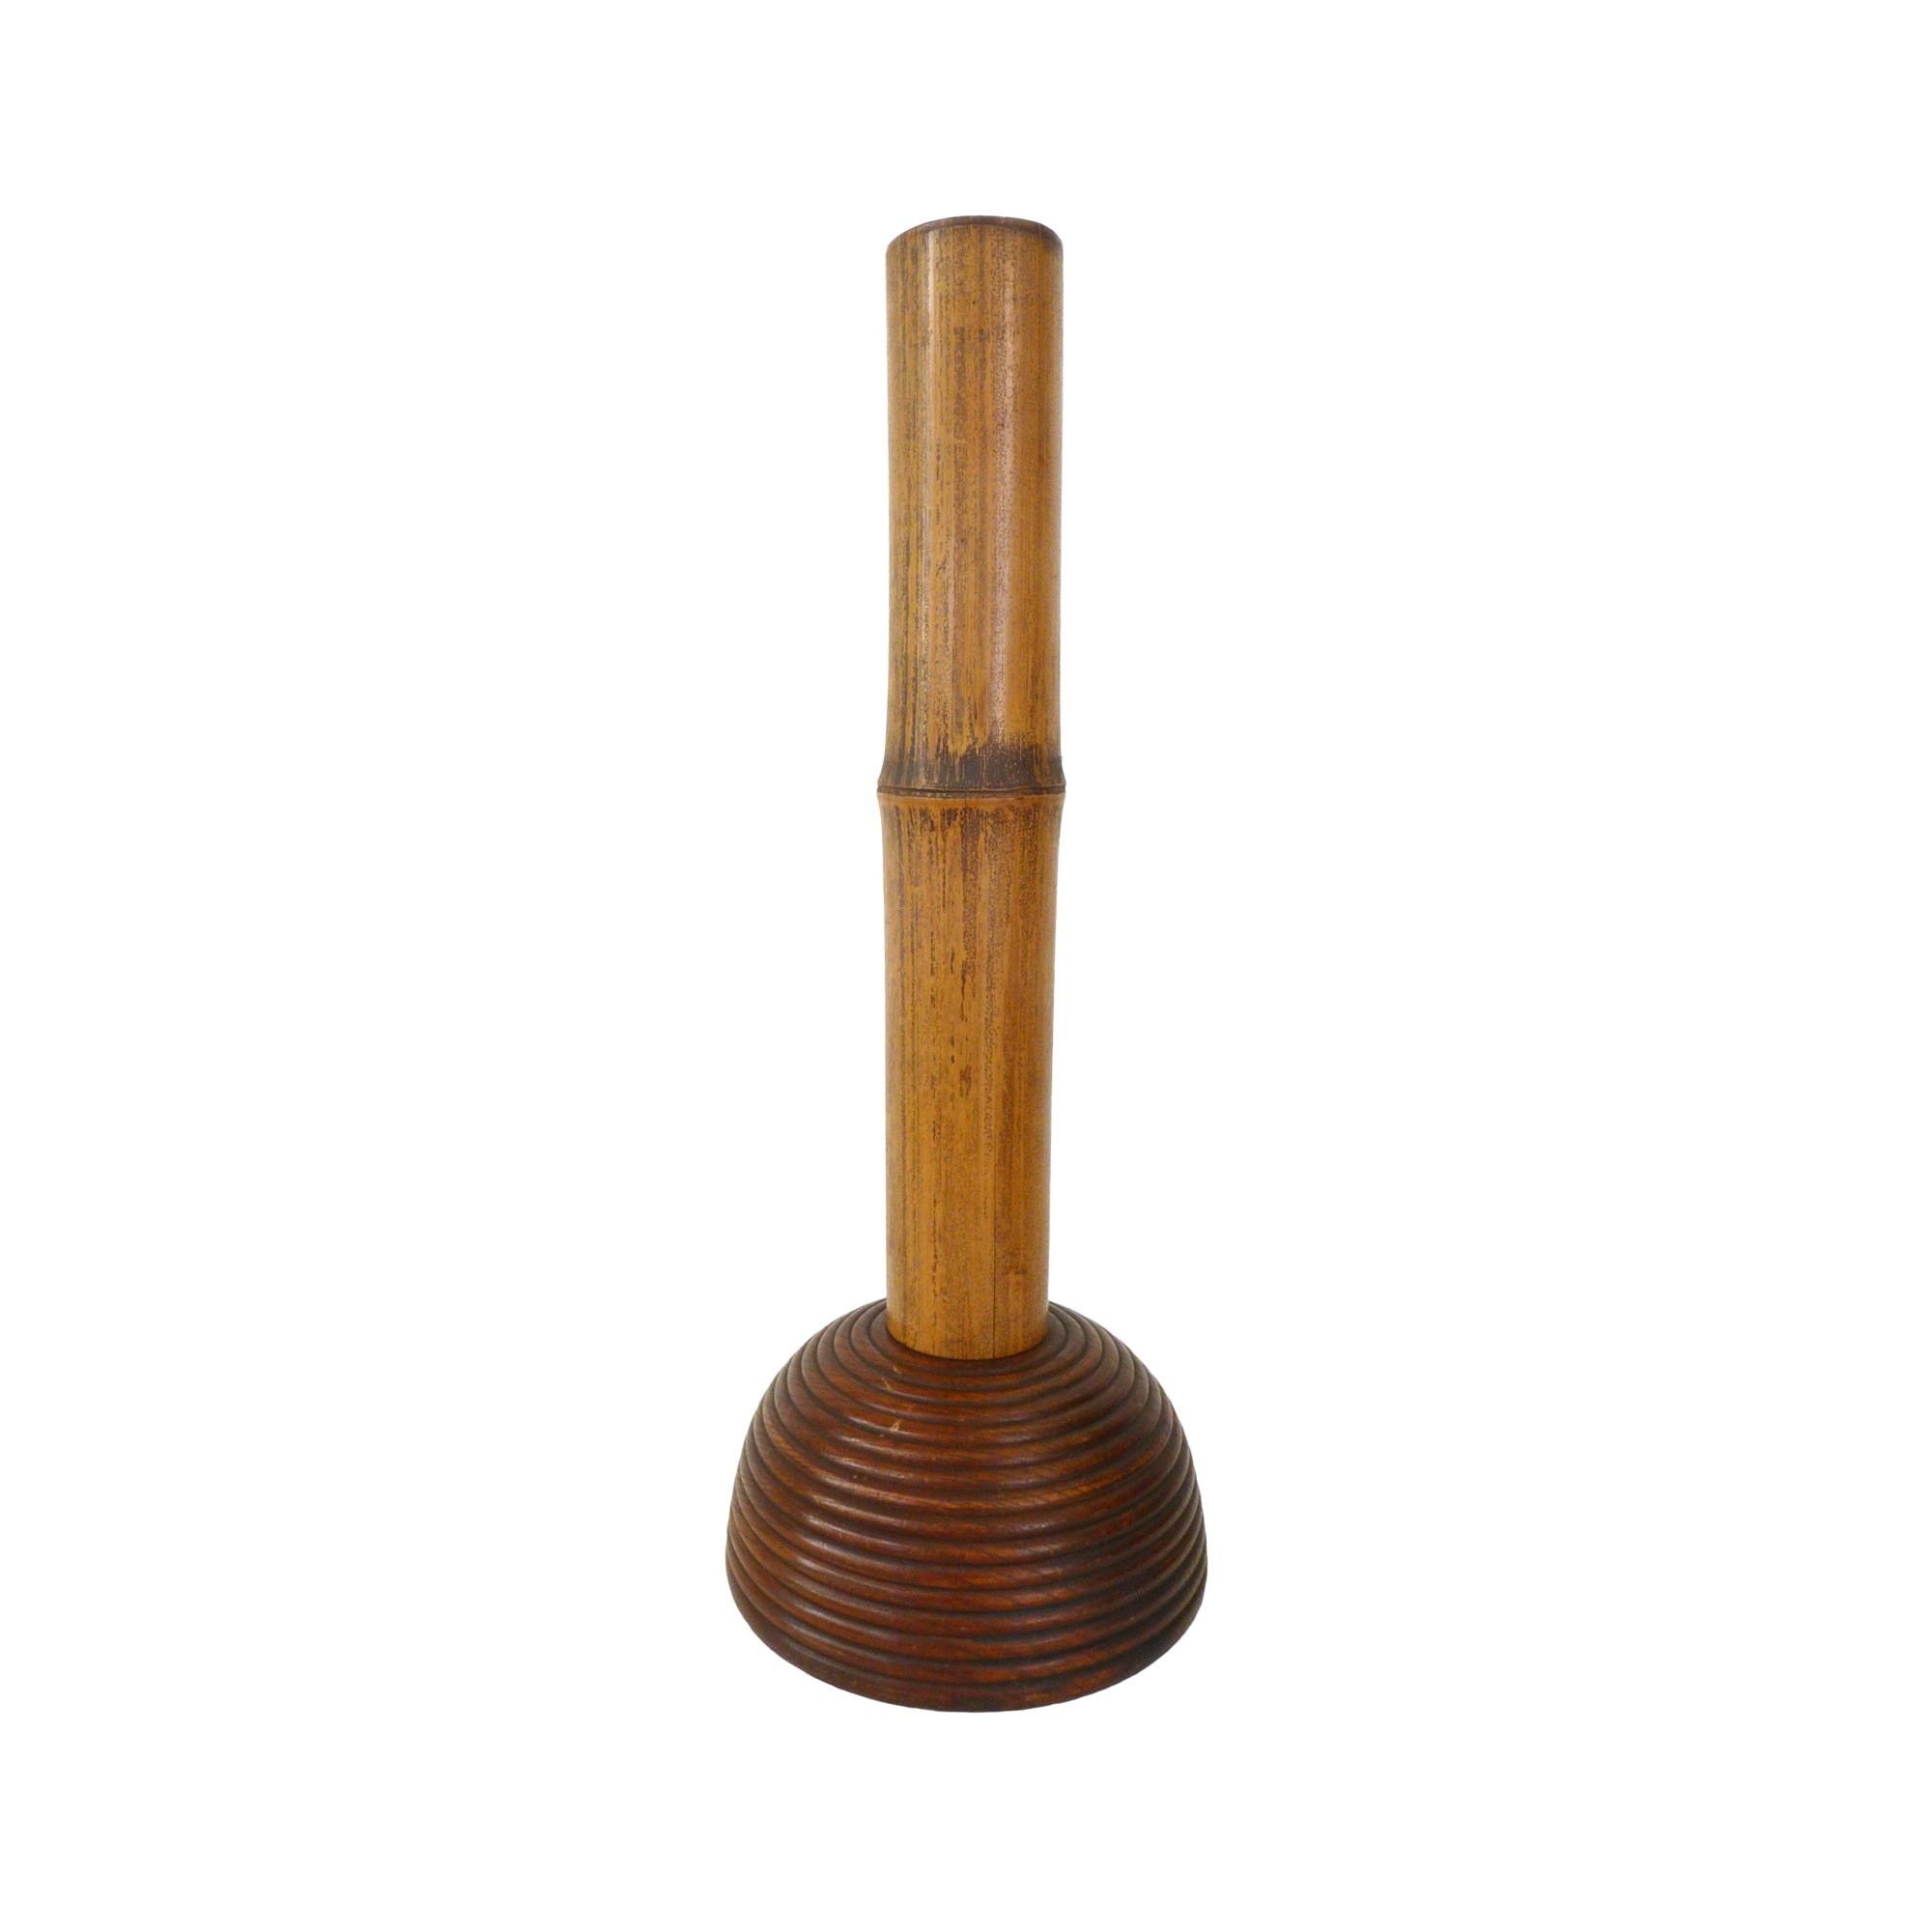 Bamboo & Turned Wood Vase